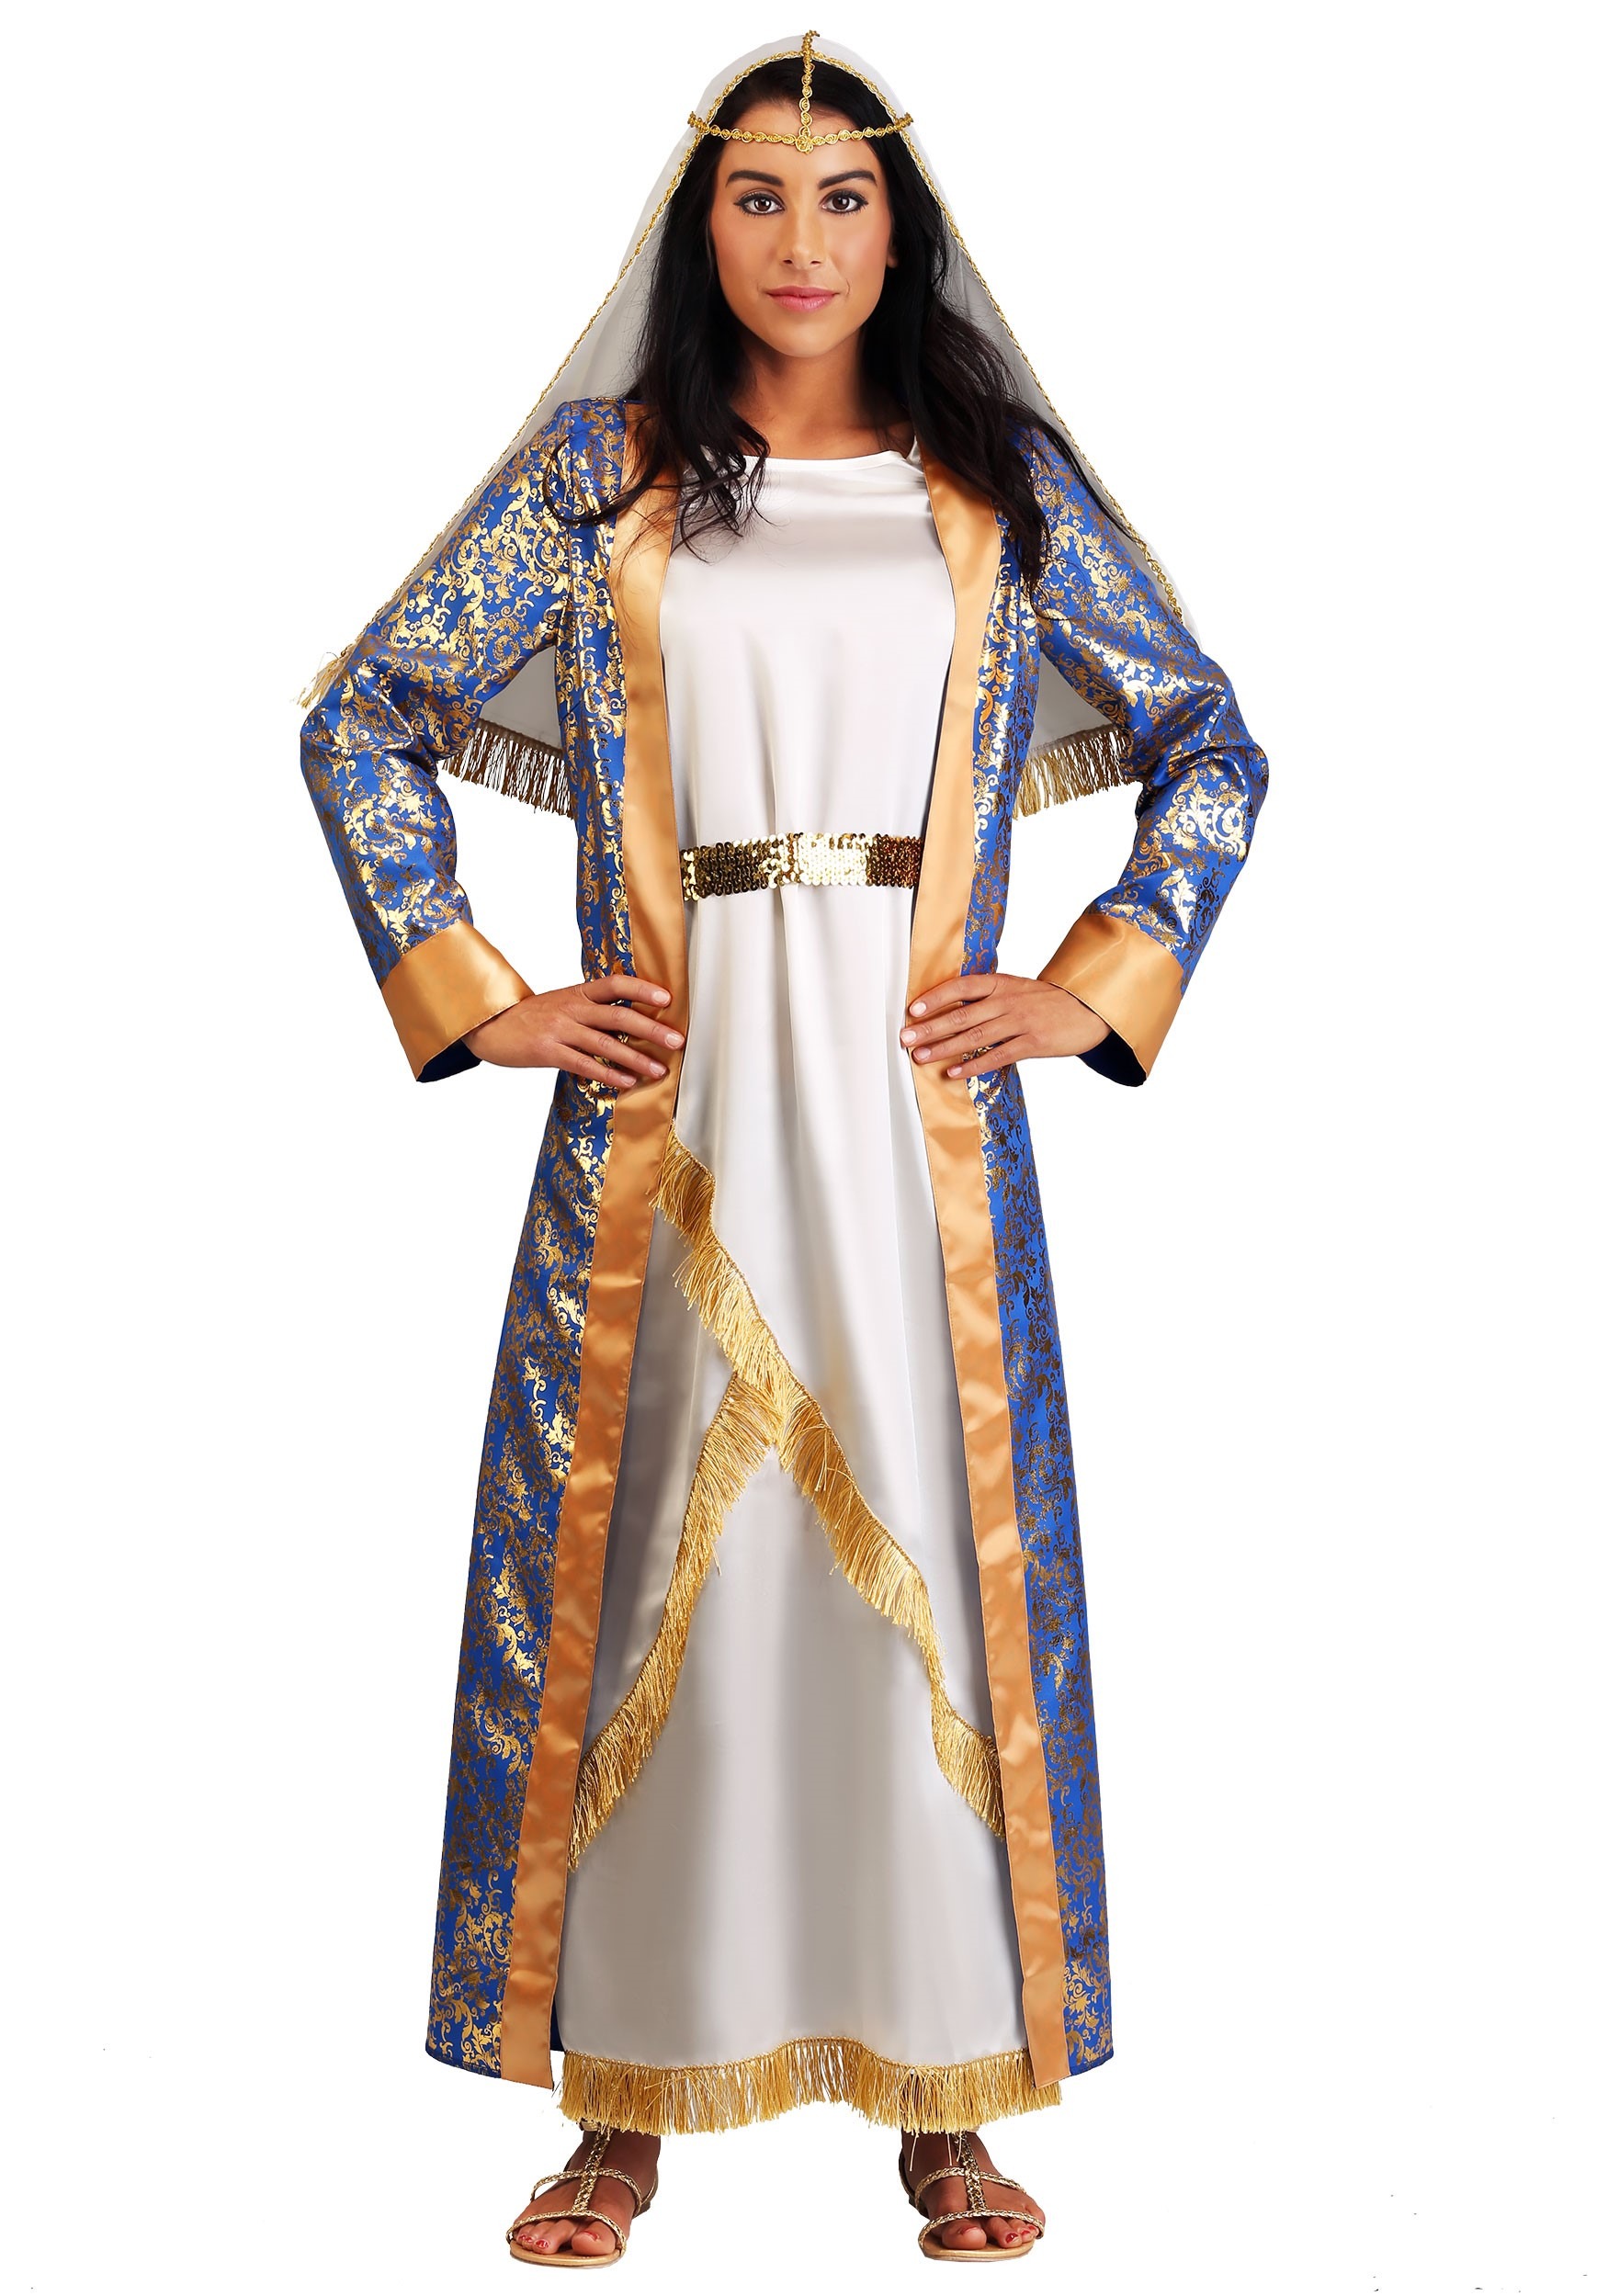 Queen Esther Women's Fancy Dress Costume